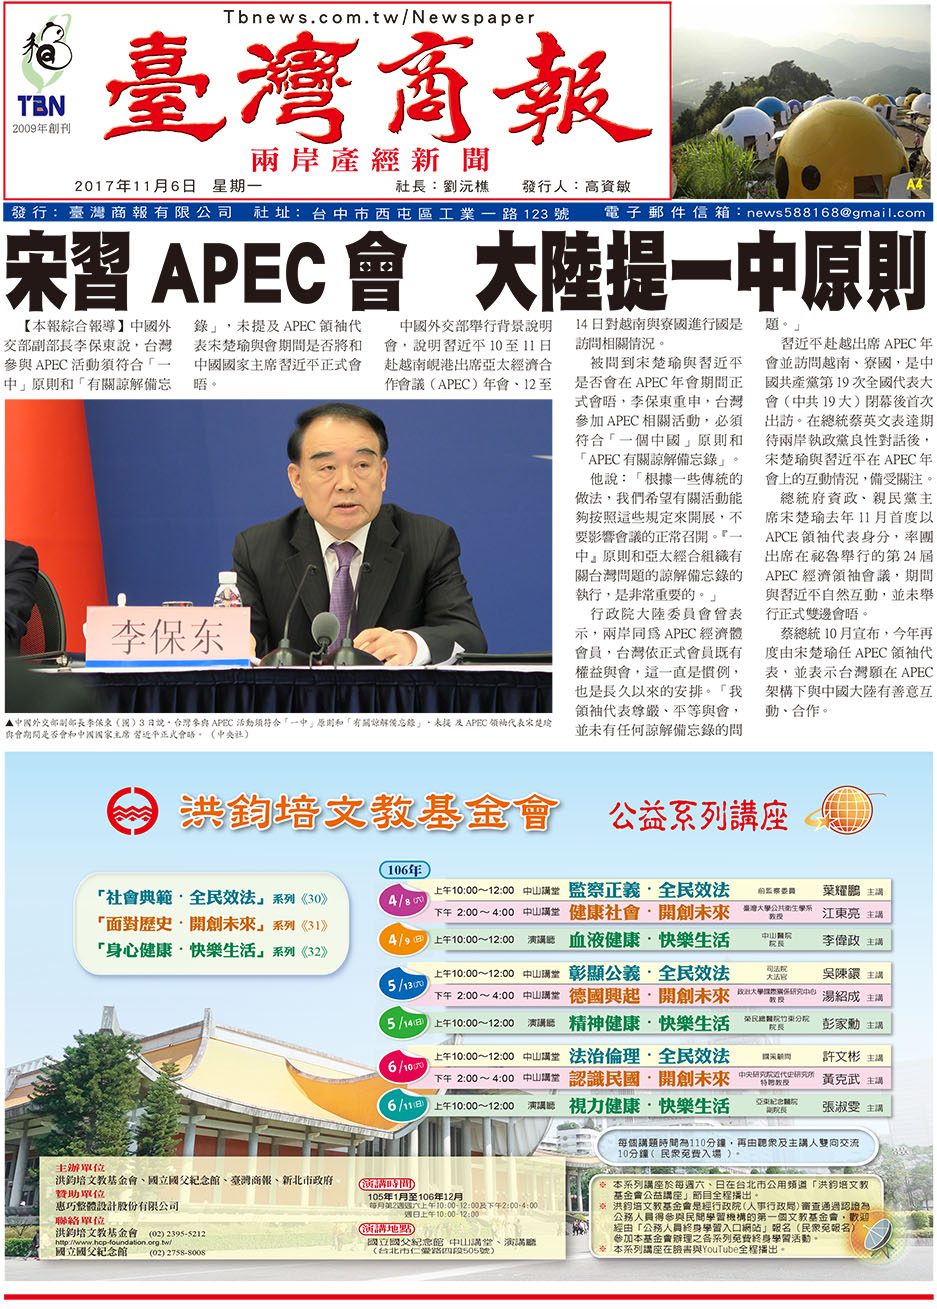 宋習 APEC 會 大陸提一中原則